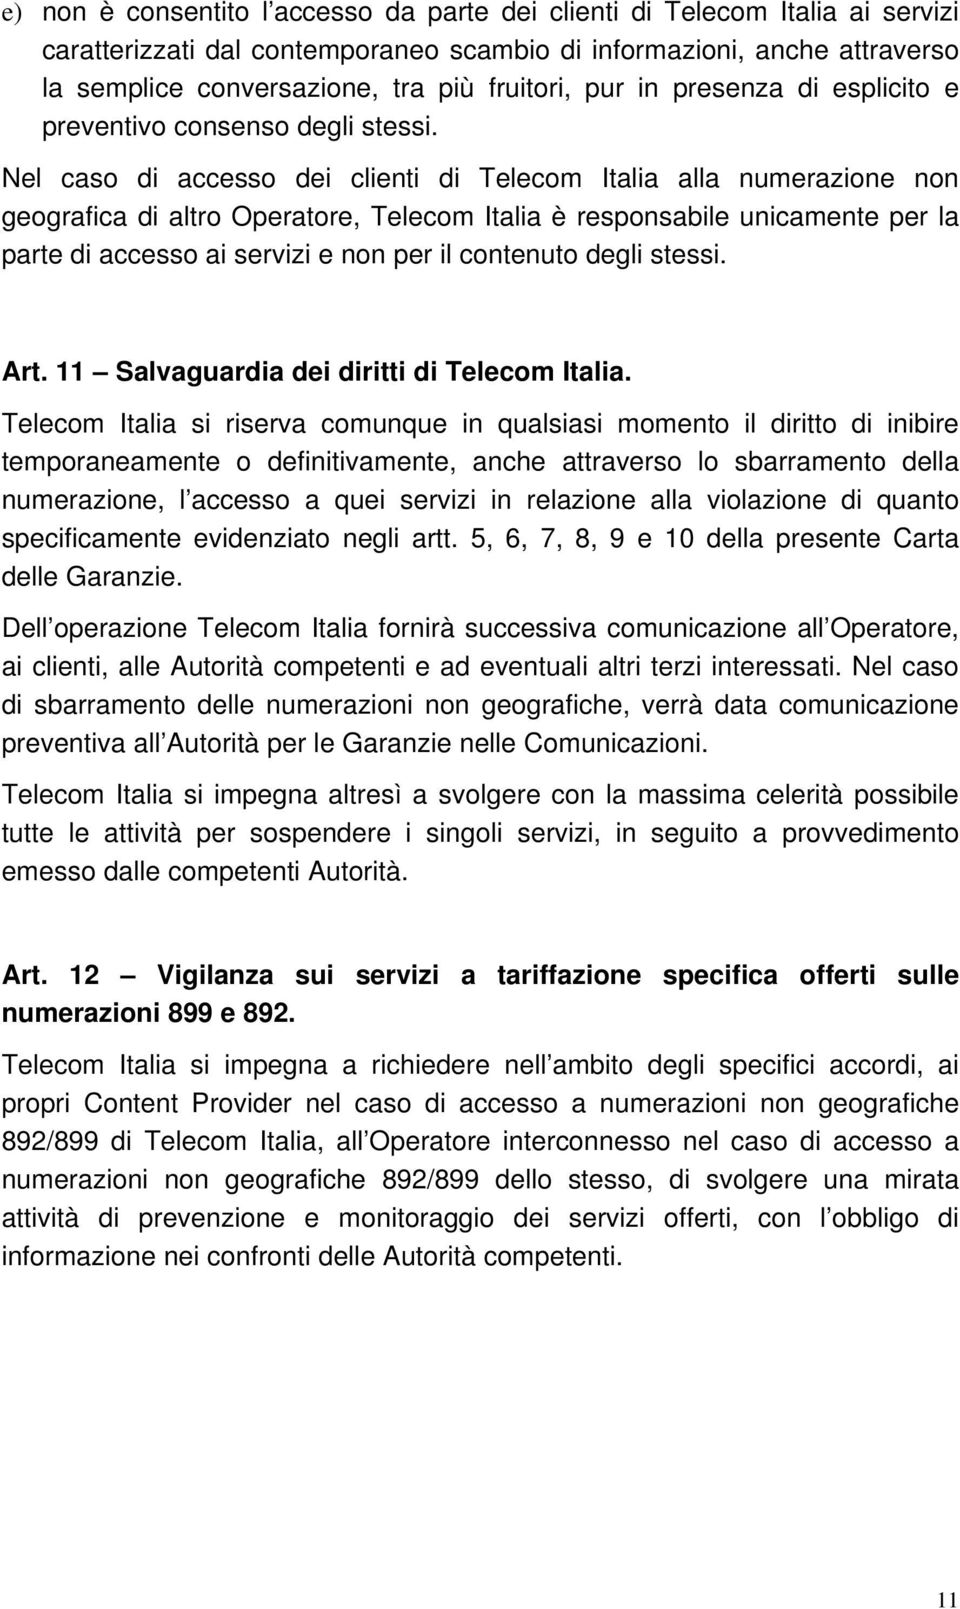 Nel caso di accesso dei clienti di Telecom Italia alla numerazione non geografica di altro Operatore, Telecom Italia è responsabile unicamente per la parte di accesso ai servizi e non per il